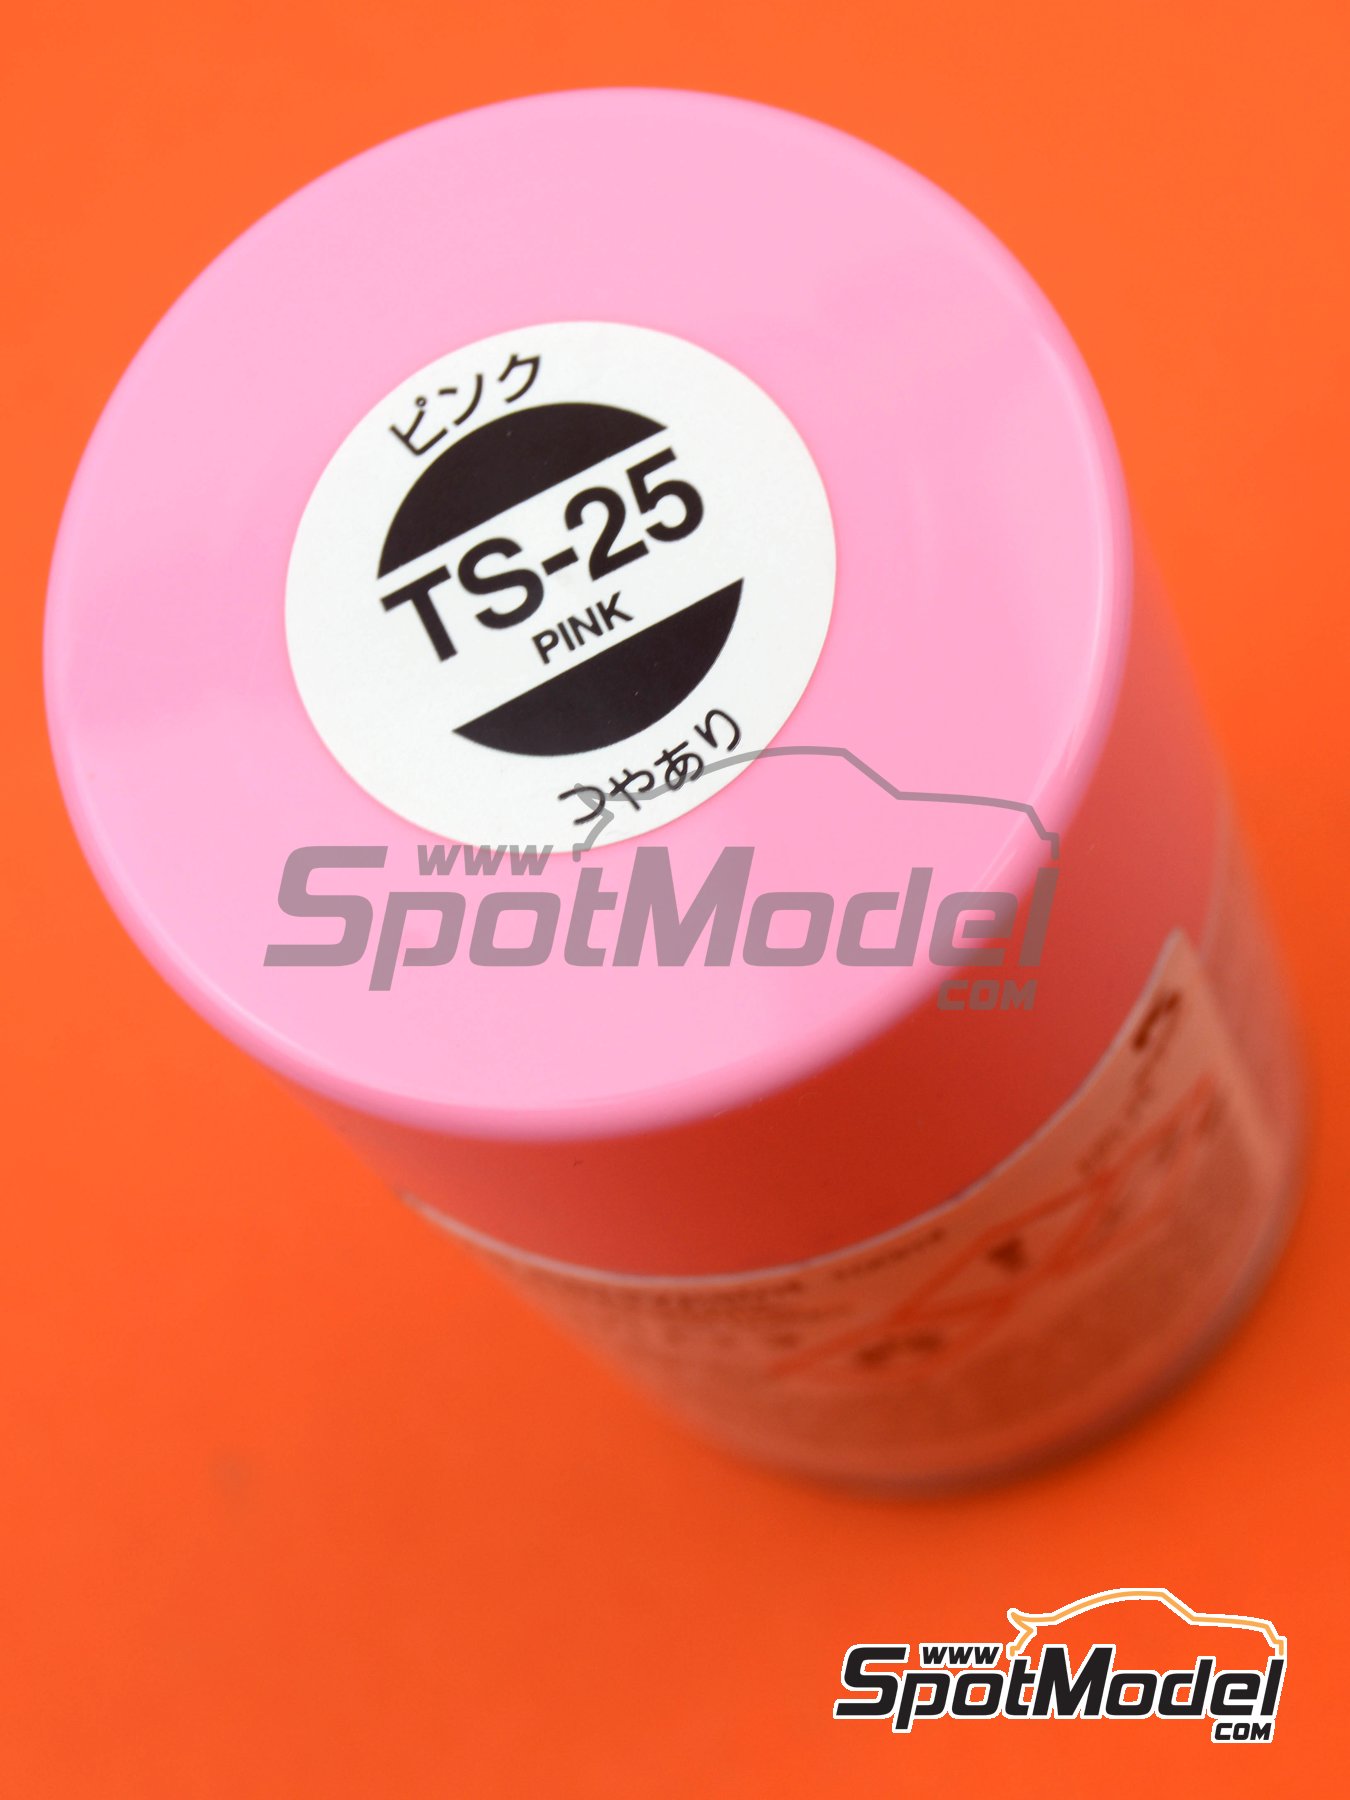 Tamiya TS-25 Pink Spray Lacquer